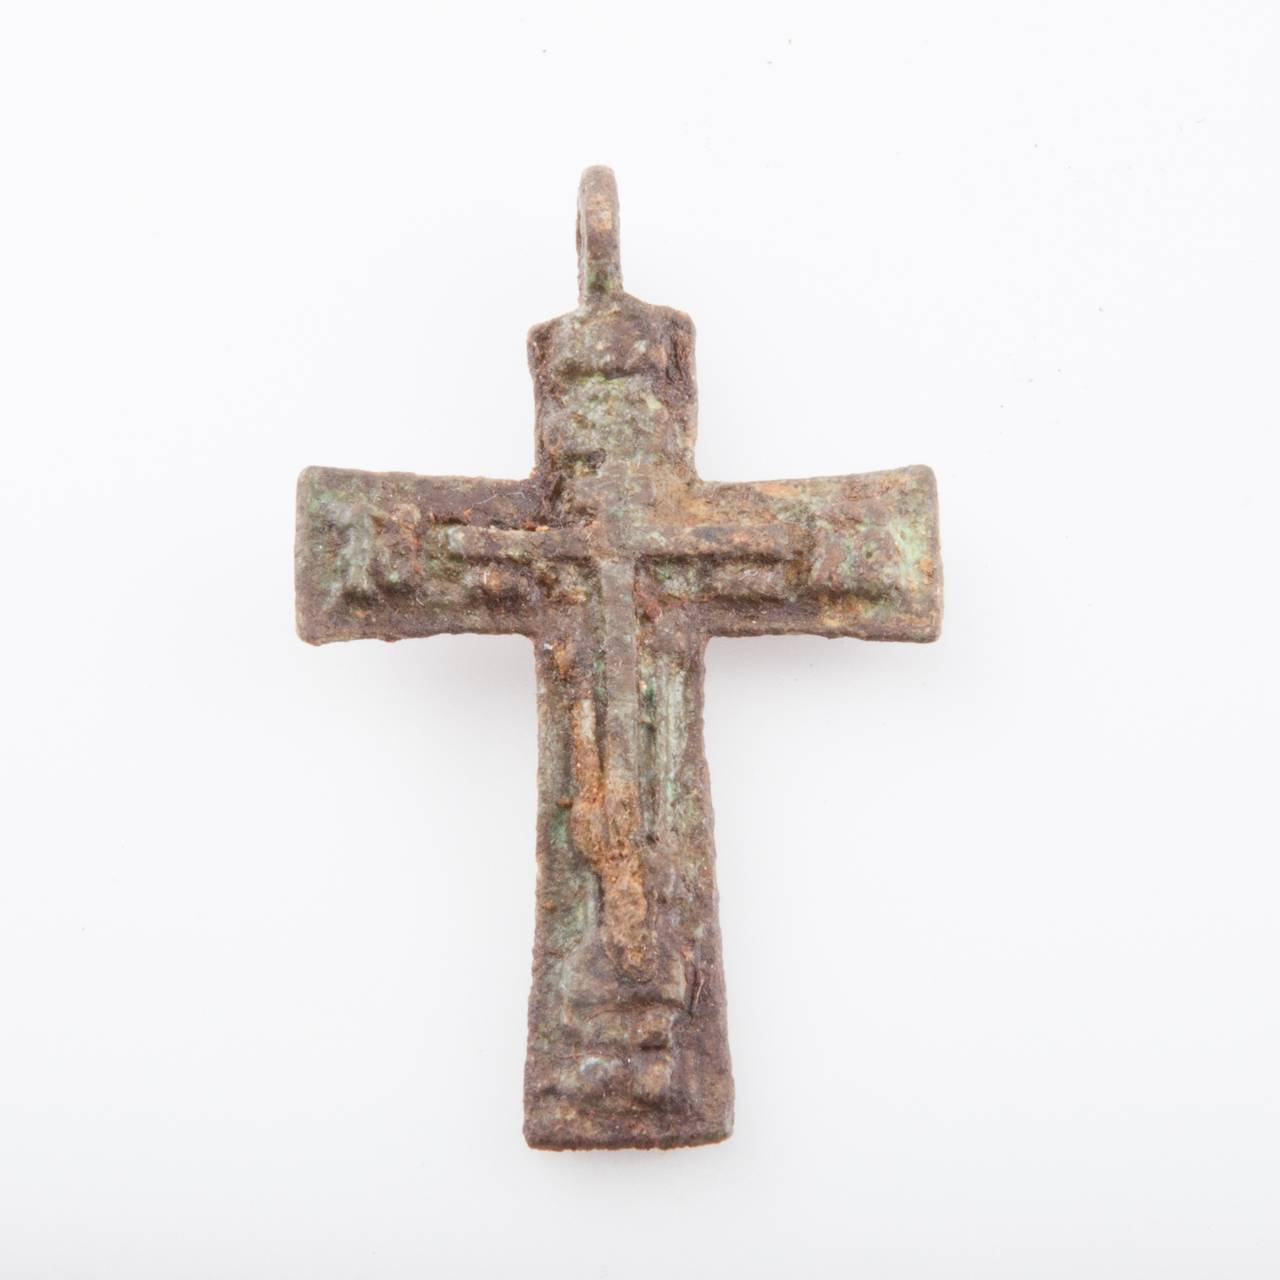 Kors funnet i samiske urgraver som tilhører De schreinerske samlinger